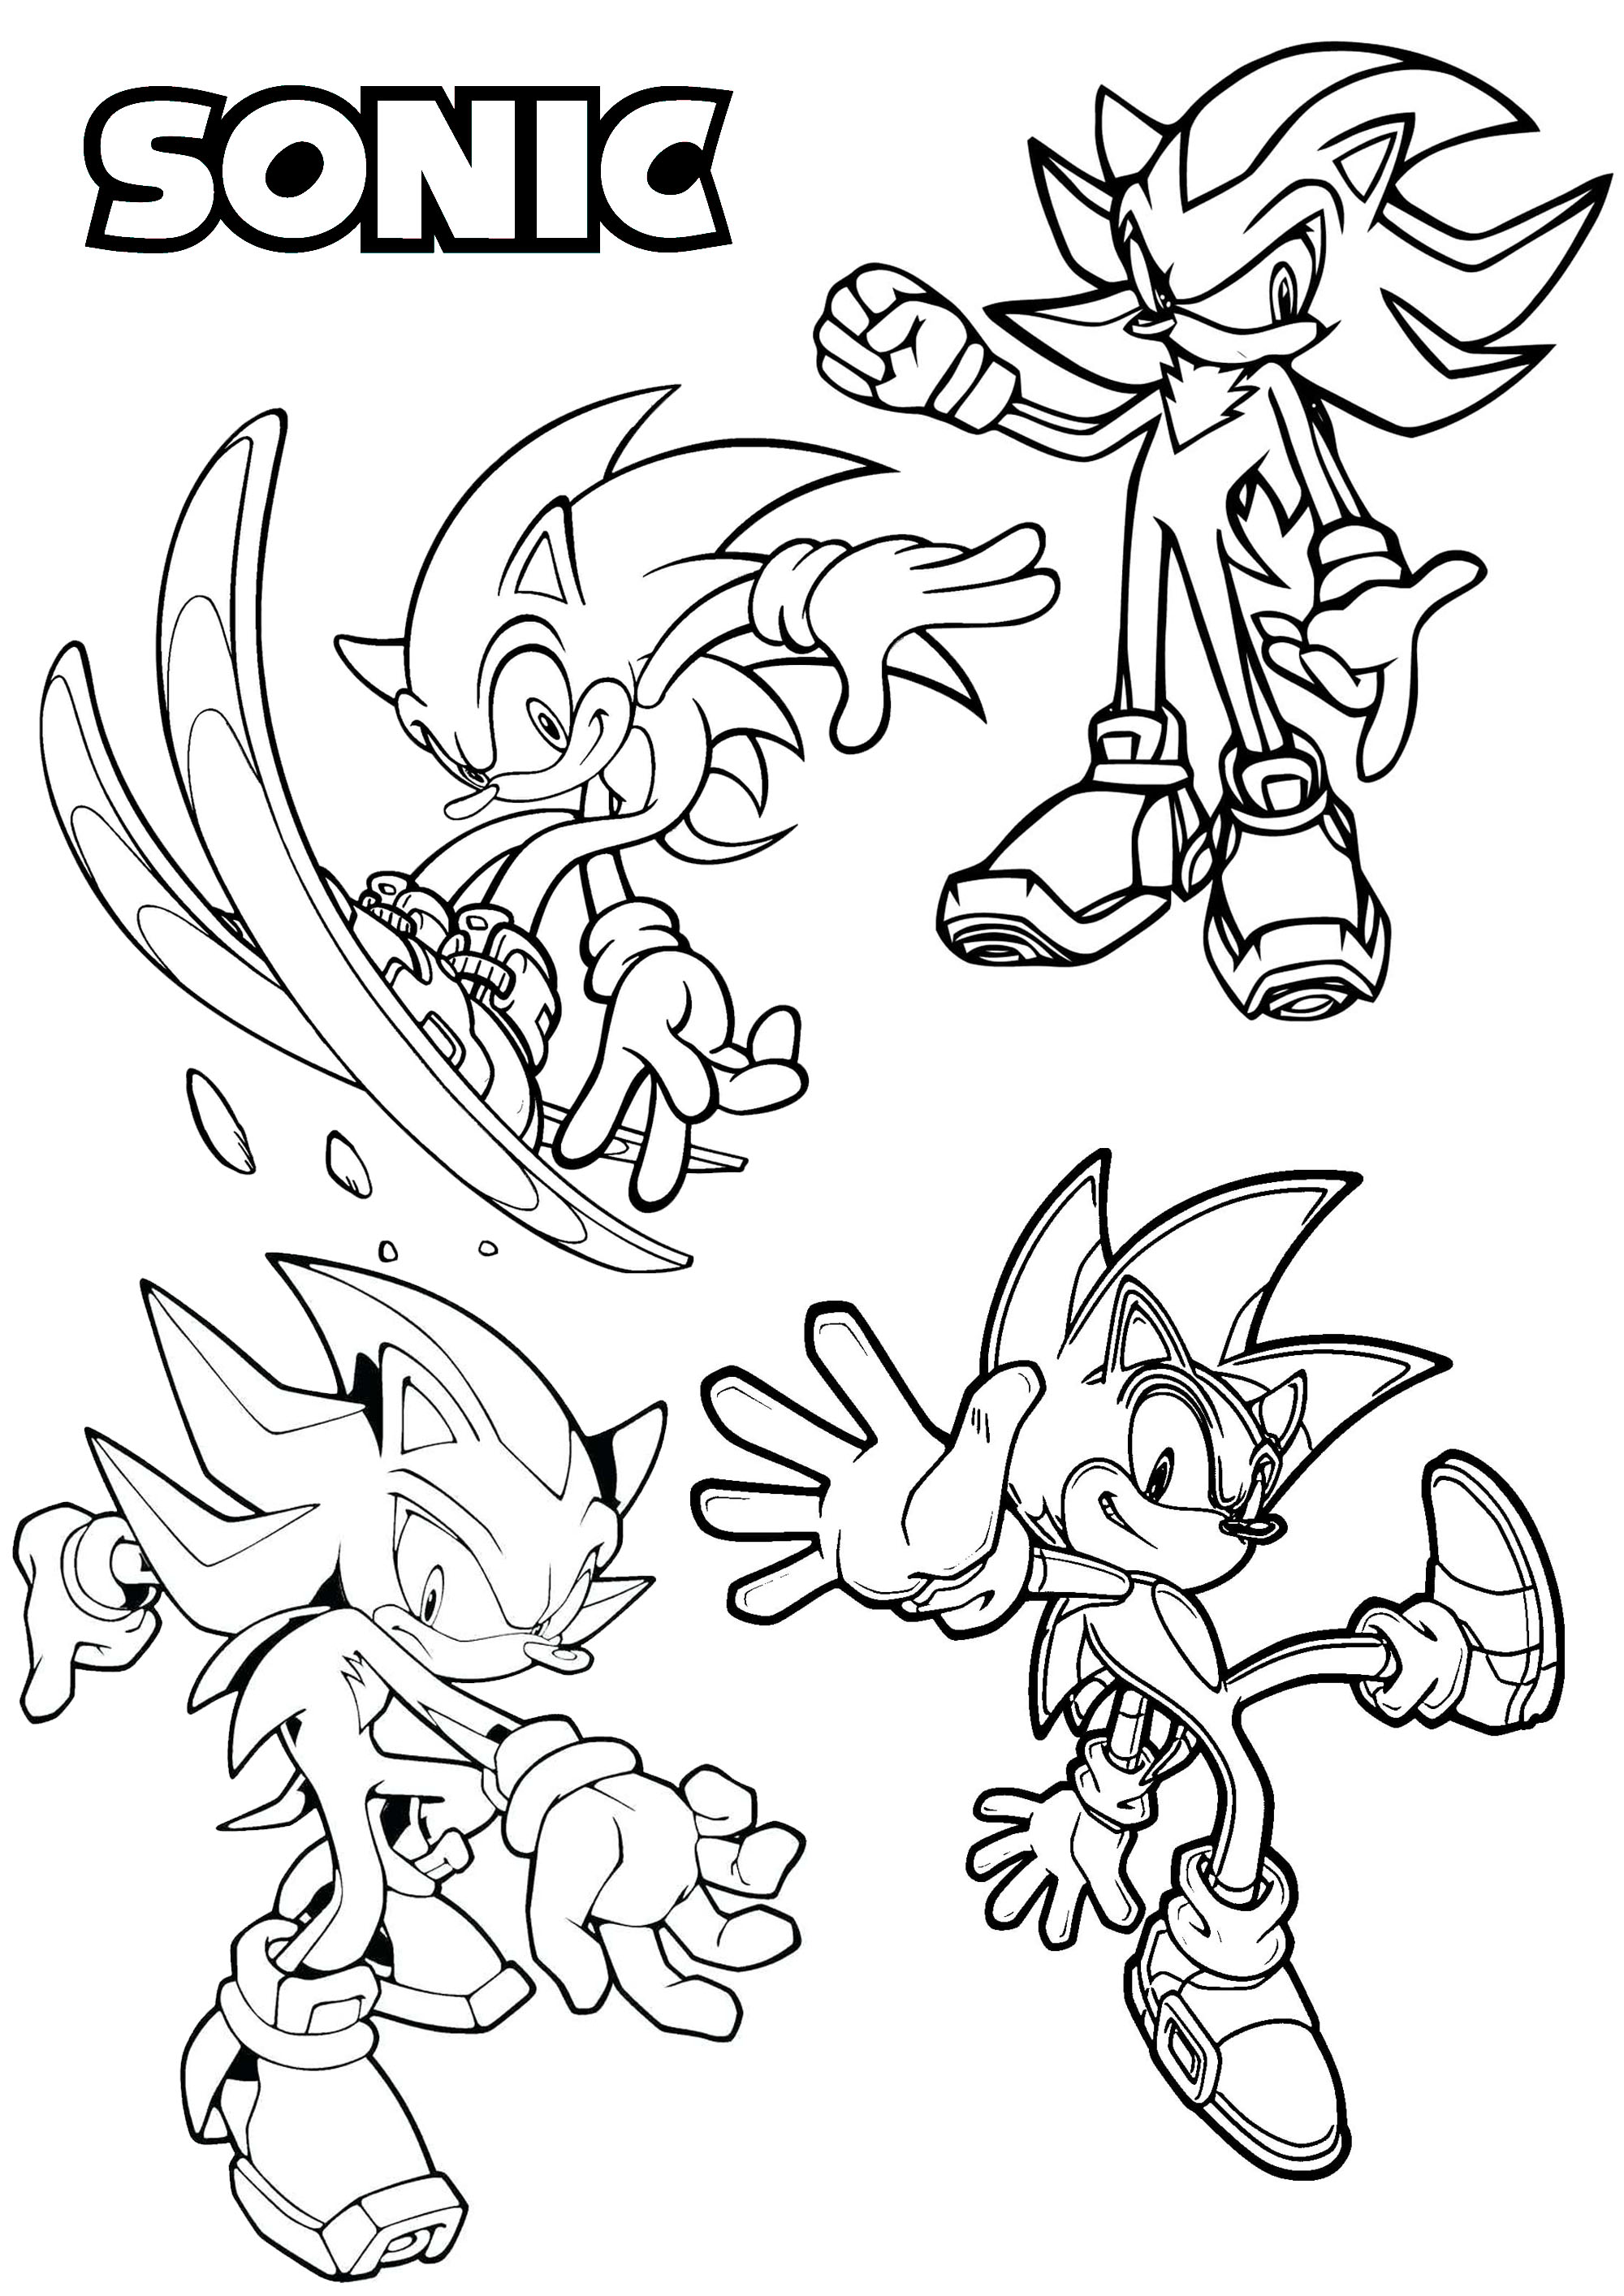 Cuatro versiones diferentes de uno de los personajes más famosos de los videojuegos, creado en los años 90 : Sonic el Erizo